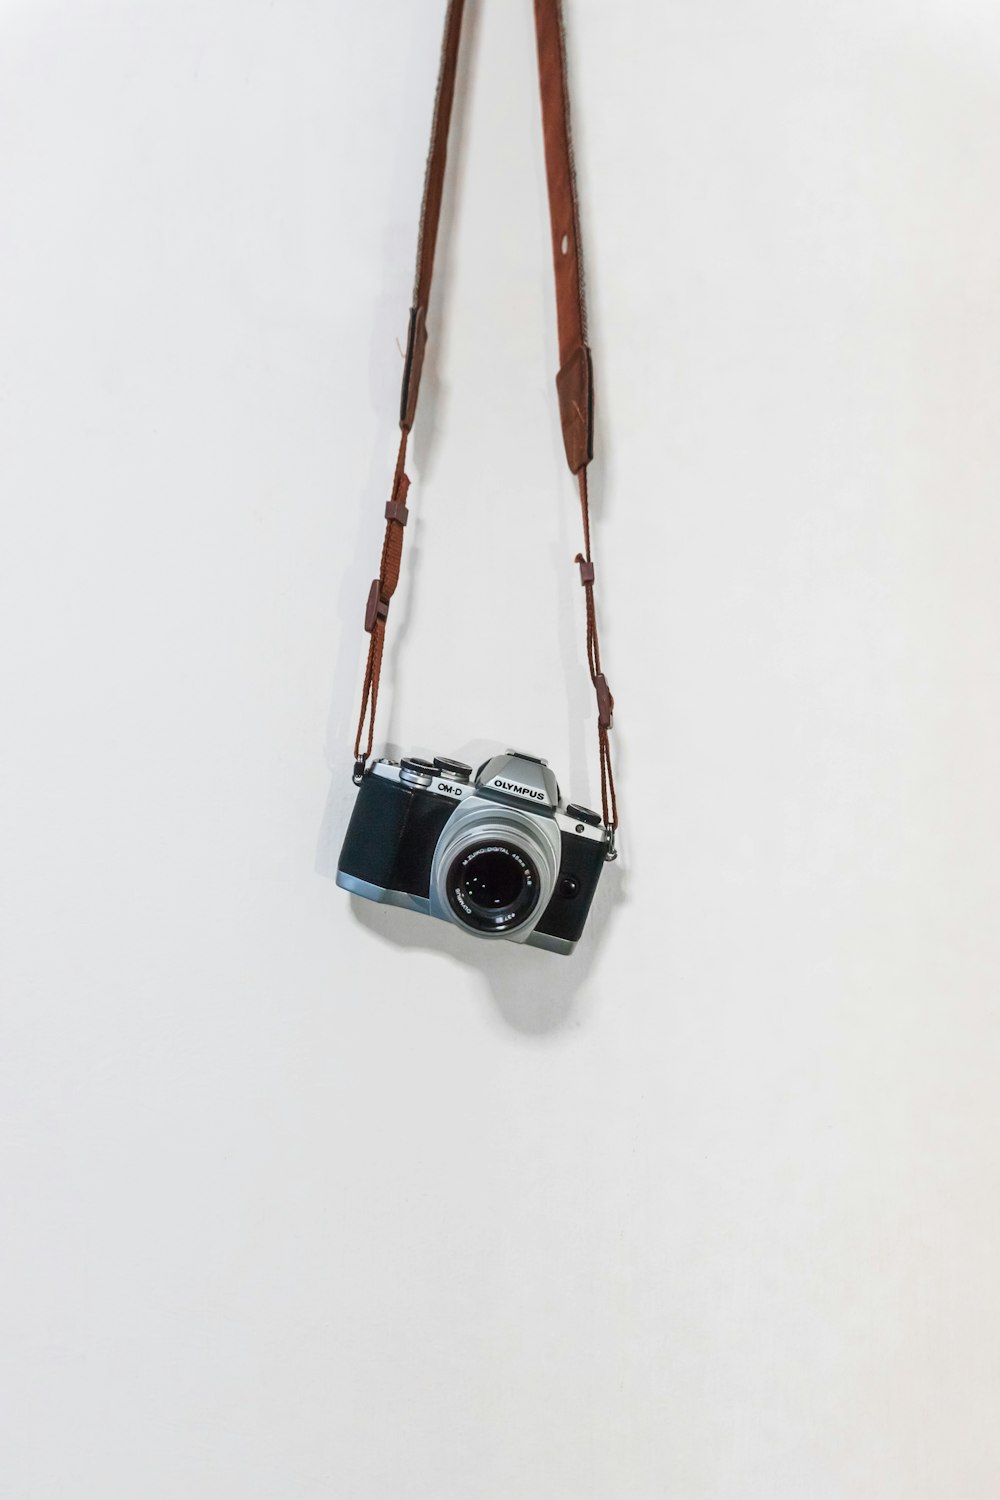 Foto cámara negra y plateada colgando de una cuerda marrón – Imagen Gris  gratis en Unsplash